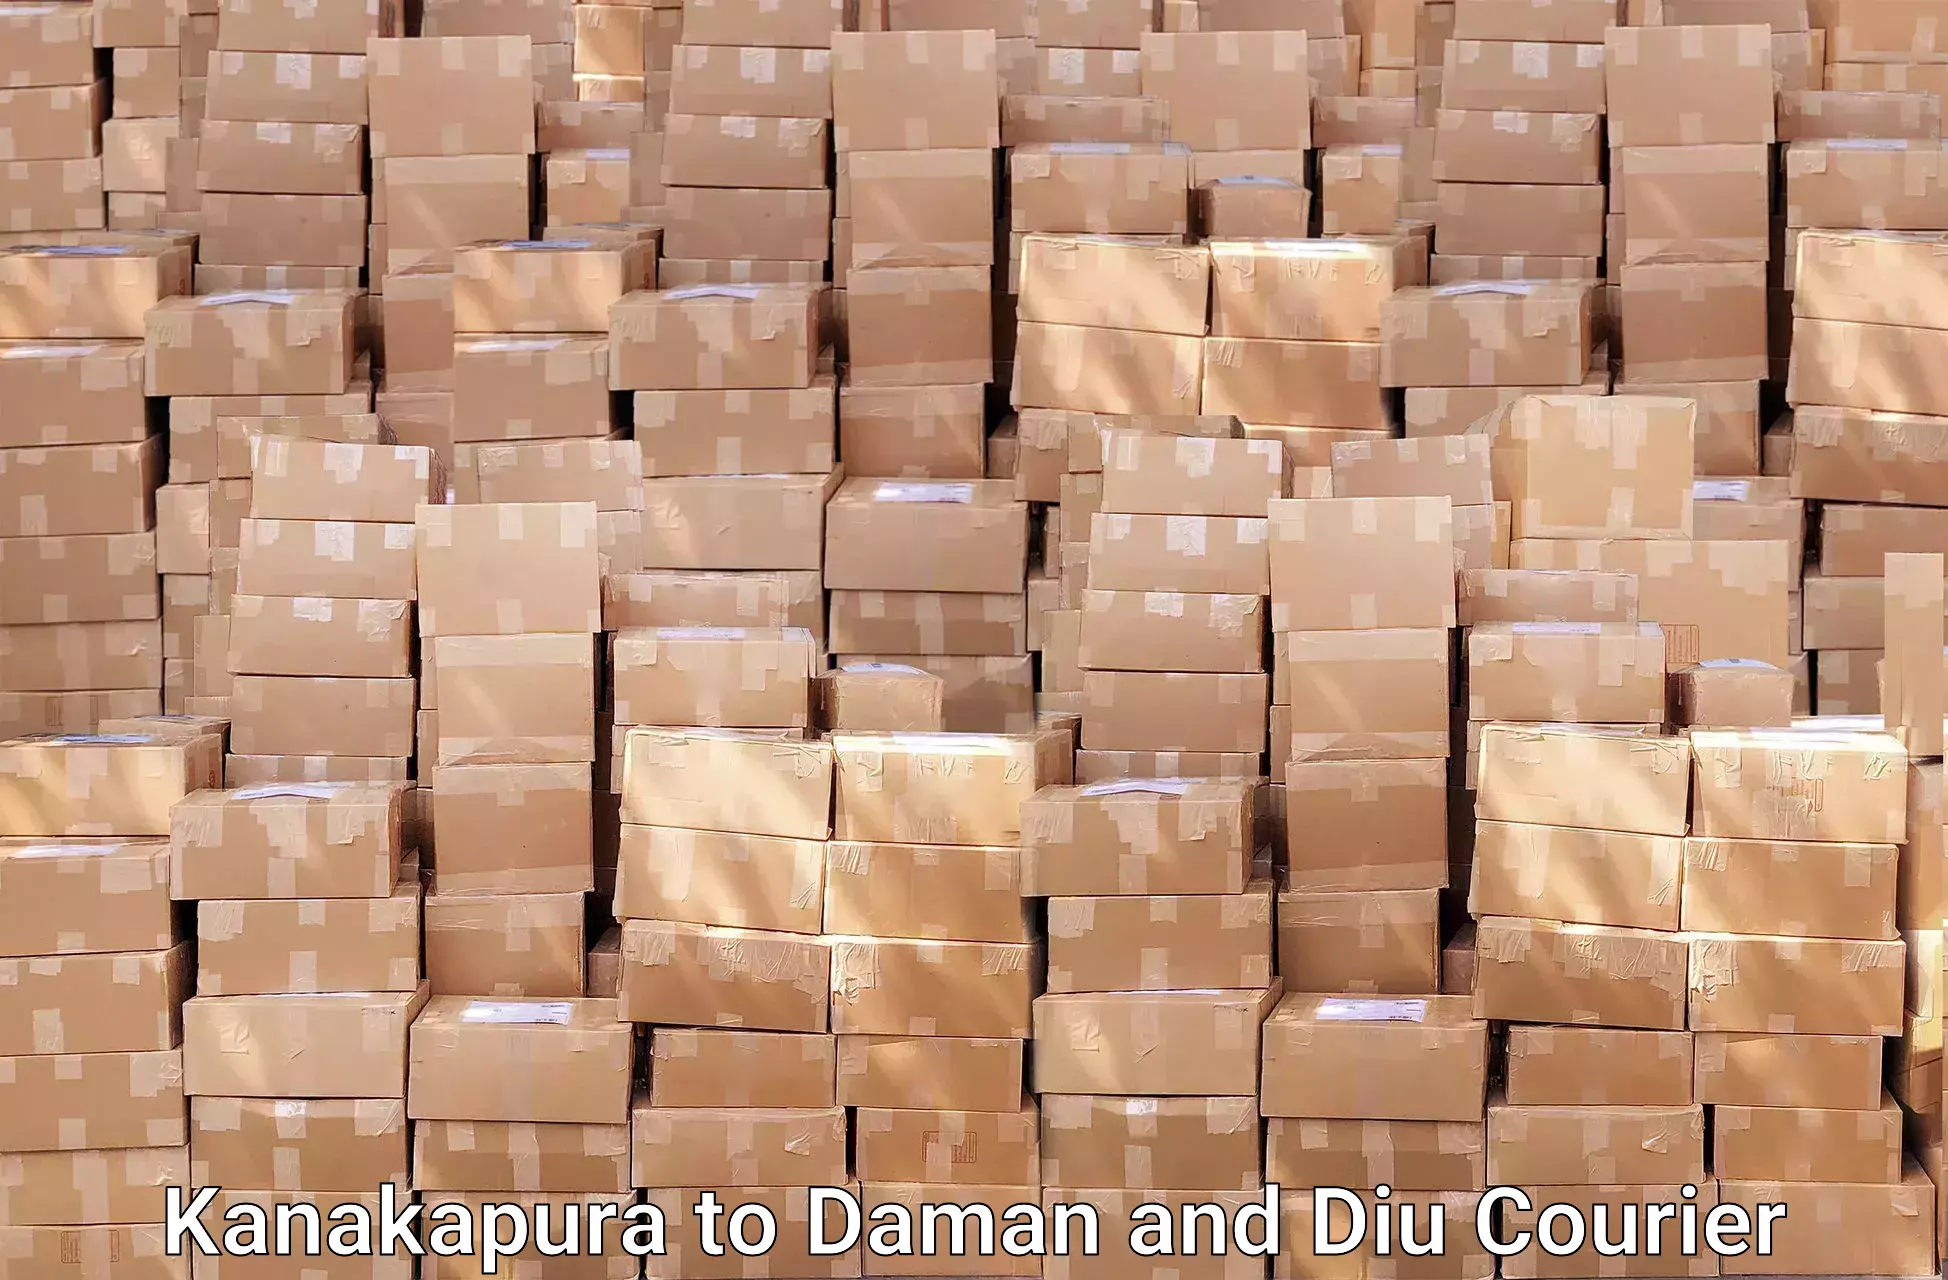 Furniture moving plans Kanakapura to Daman and Diu